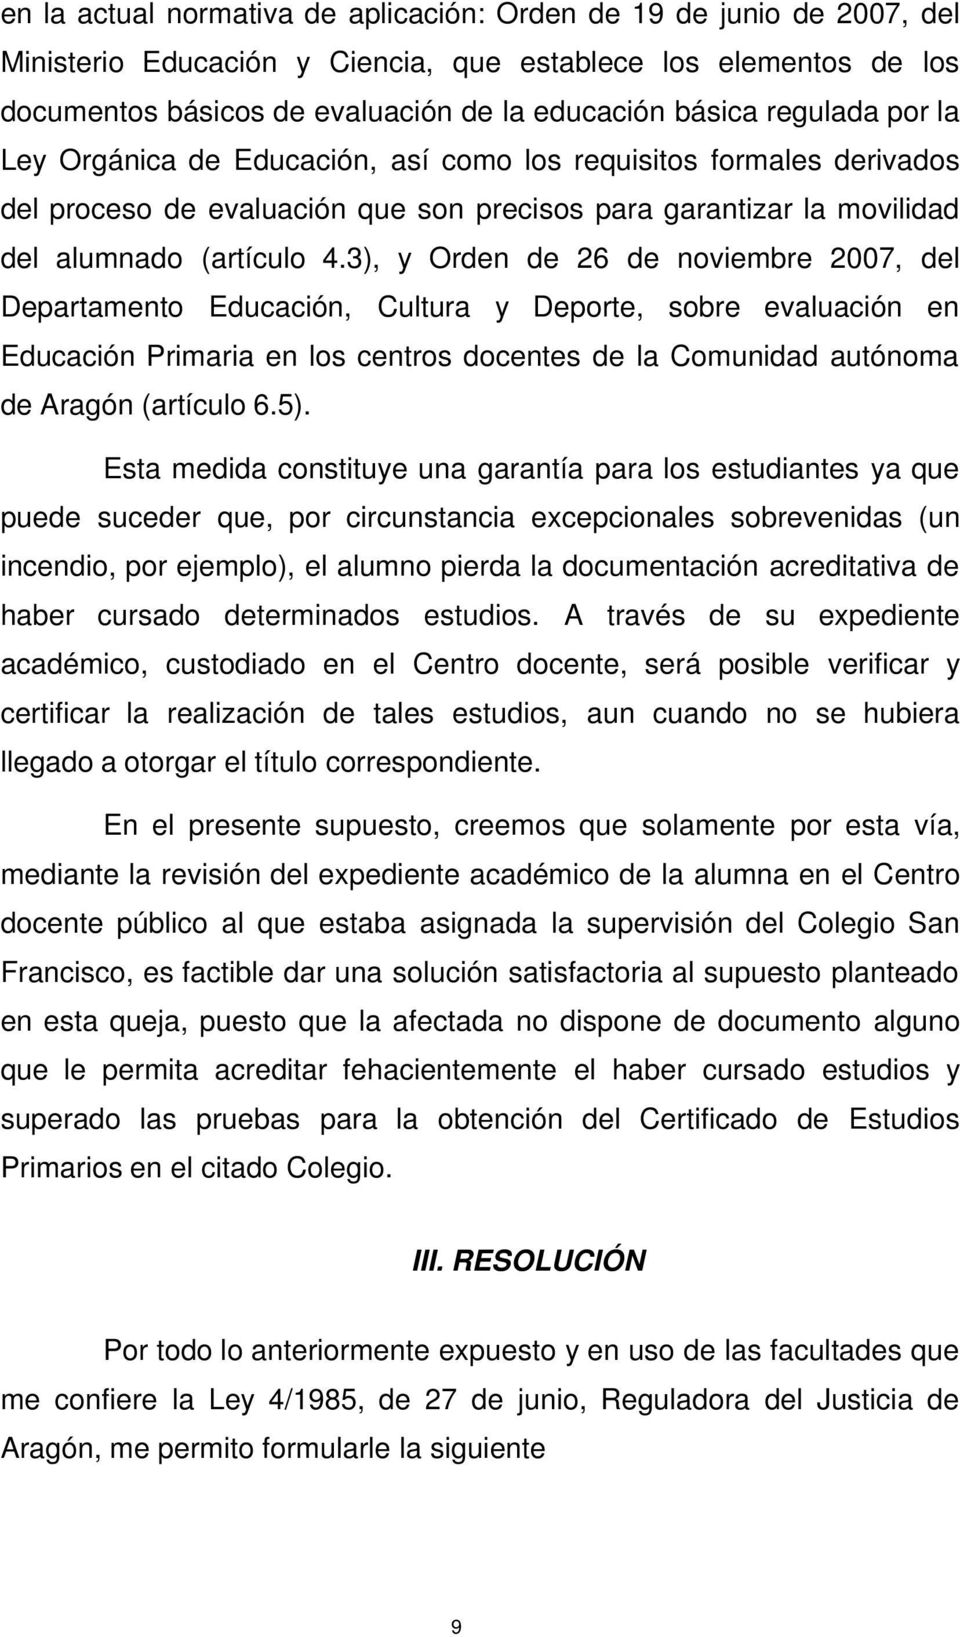 3), y Orden de 26 de noviembre 2007, del Departamento Educación, Cultura y Deporte, sobre evaluación en Educación Primaria en los centros docentes de la Comunidad autónoma de Aragón (artículo 6.5).